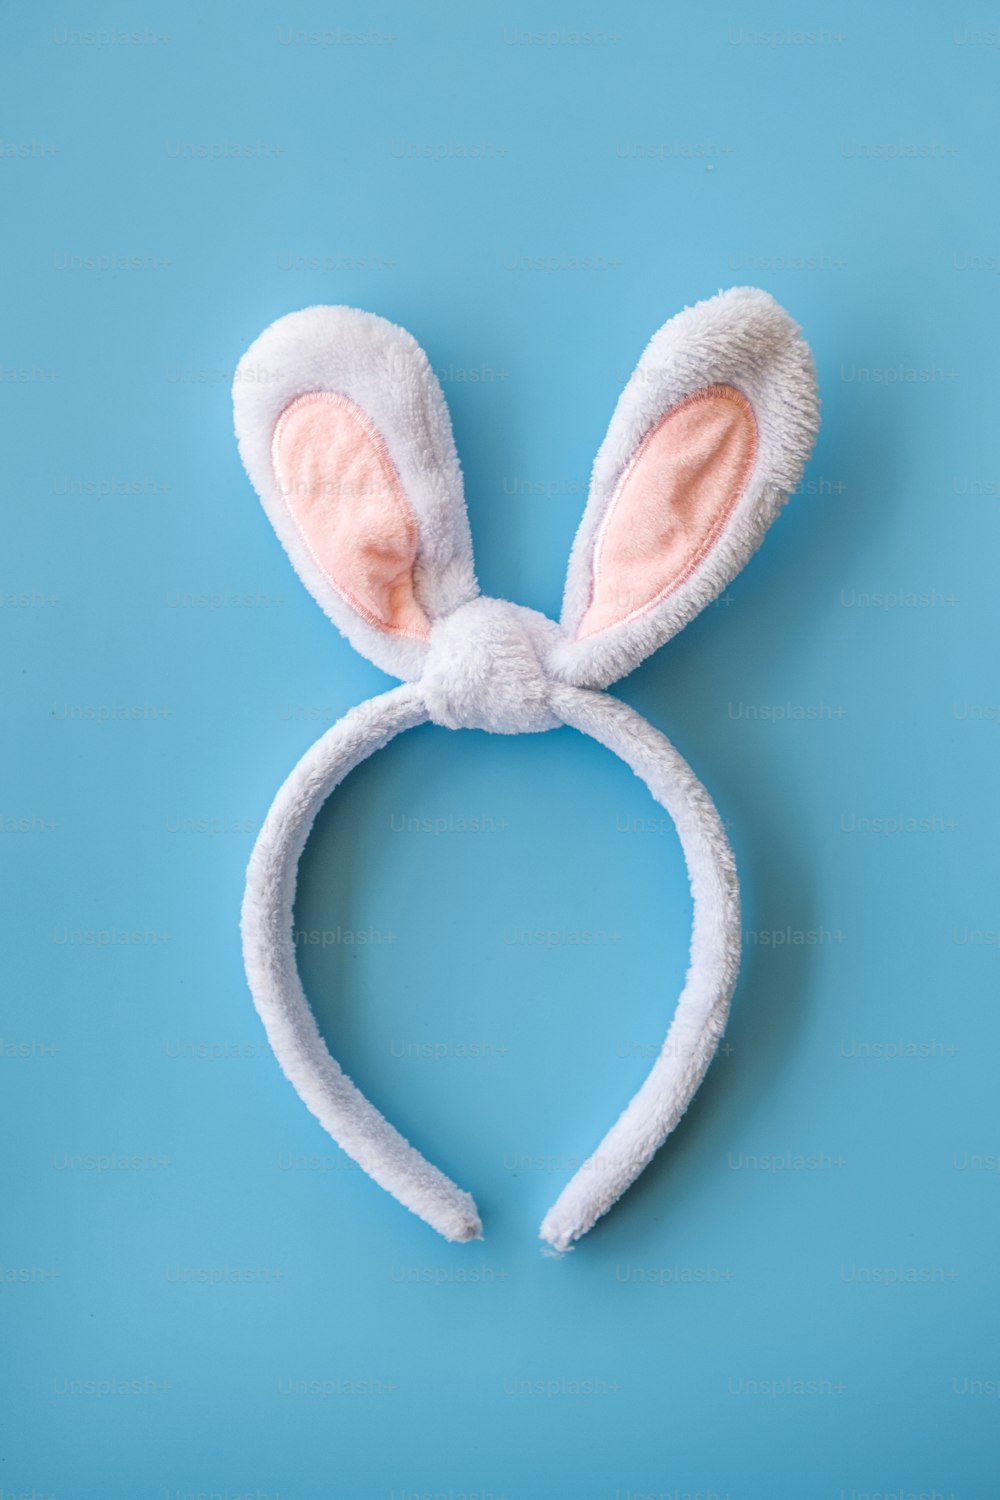 White Bunny Ears Headband